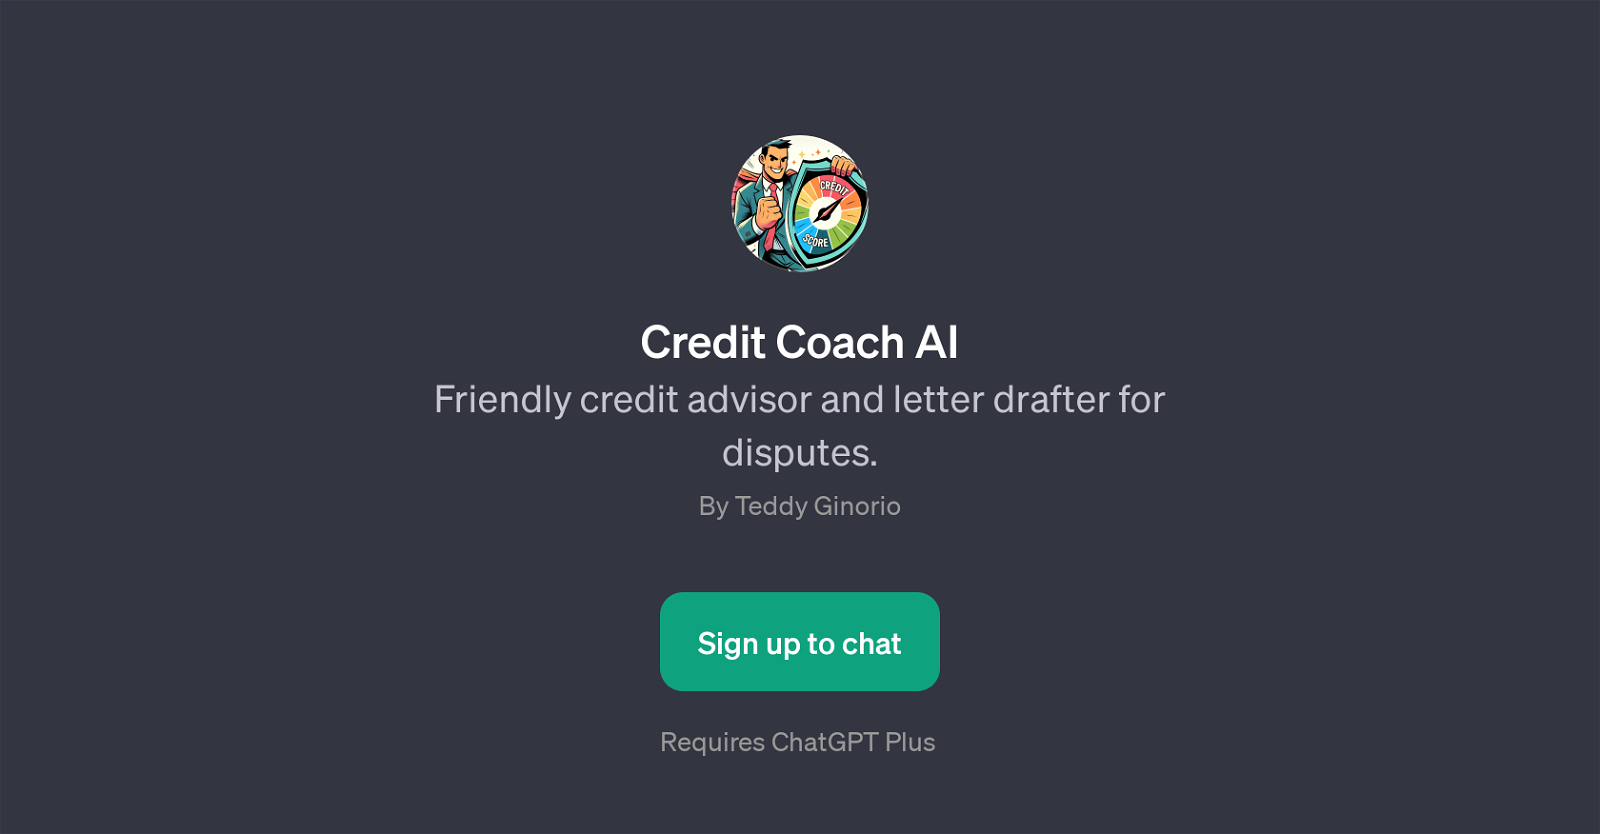 Credit Coach AI website